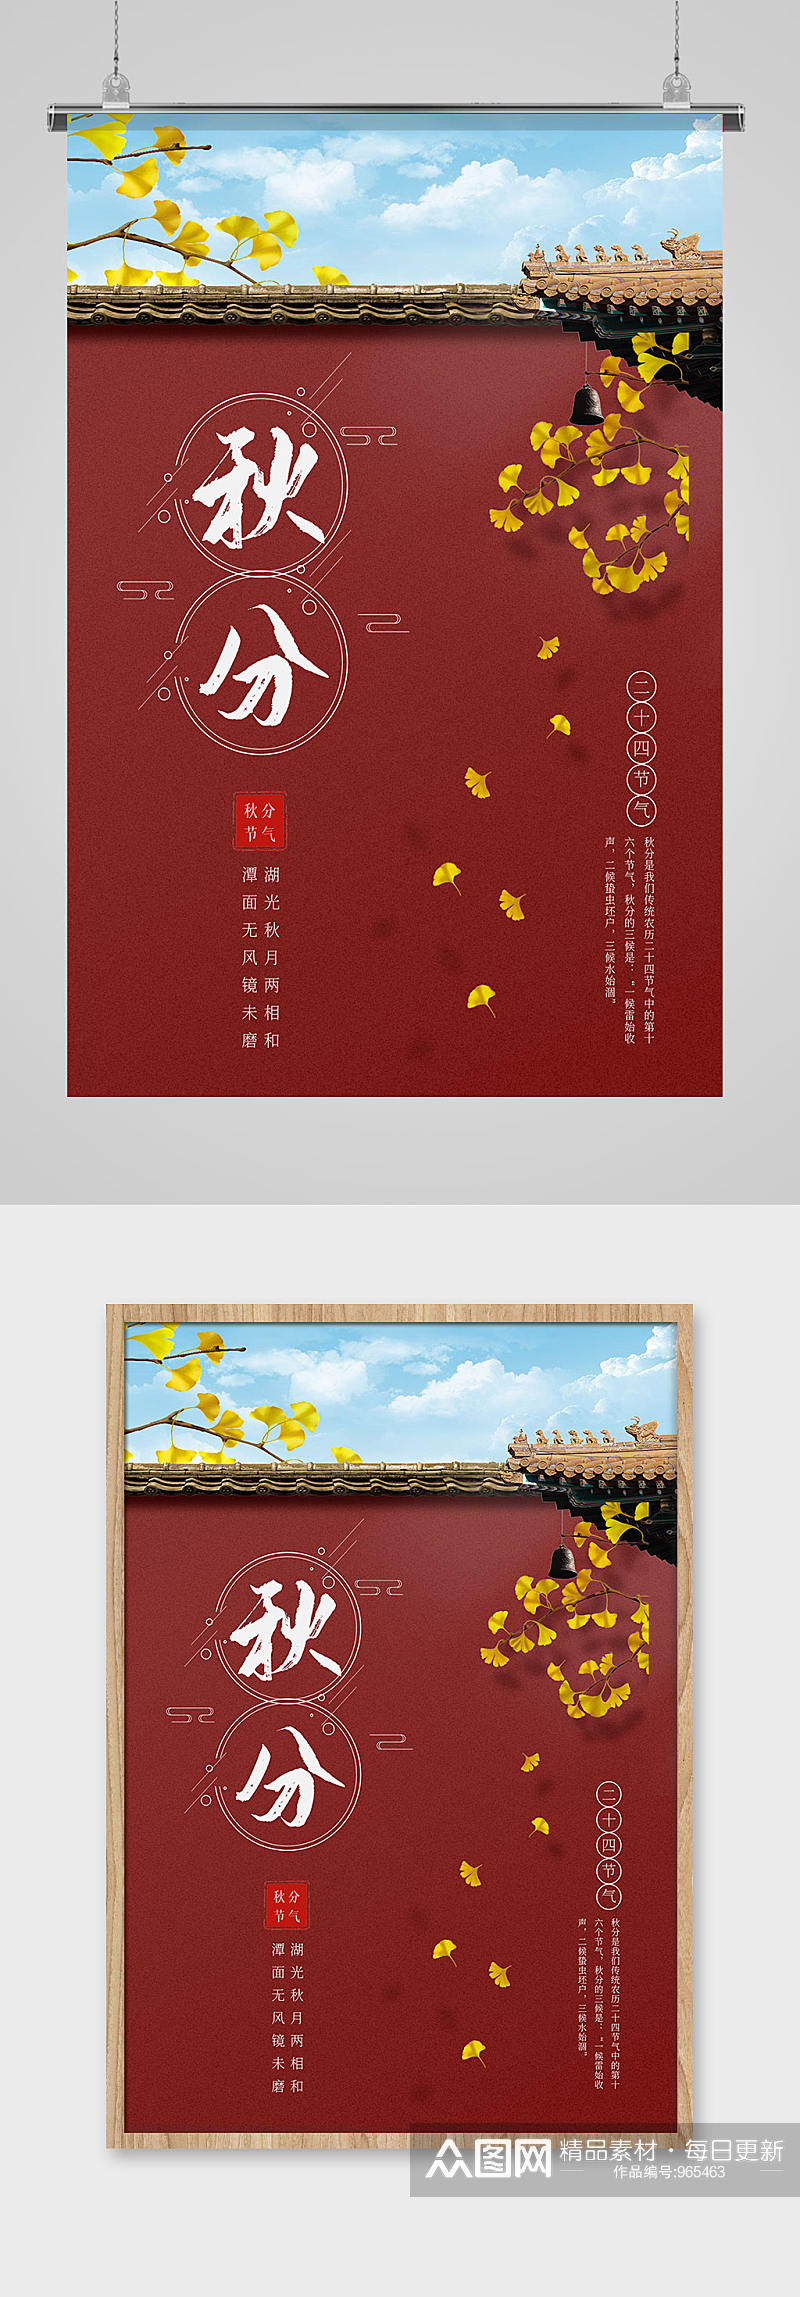 二十四节气之秋分简洁中国风印刷海报素材